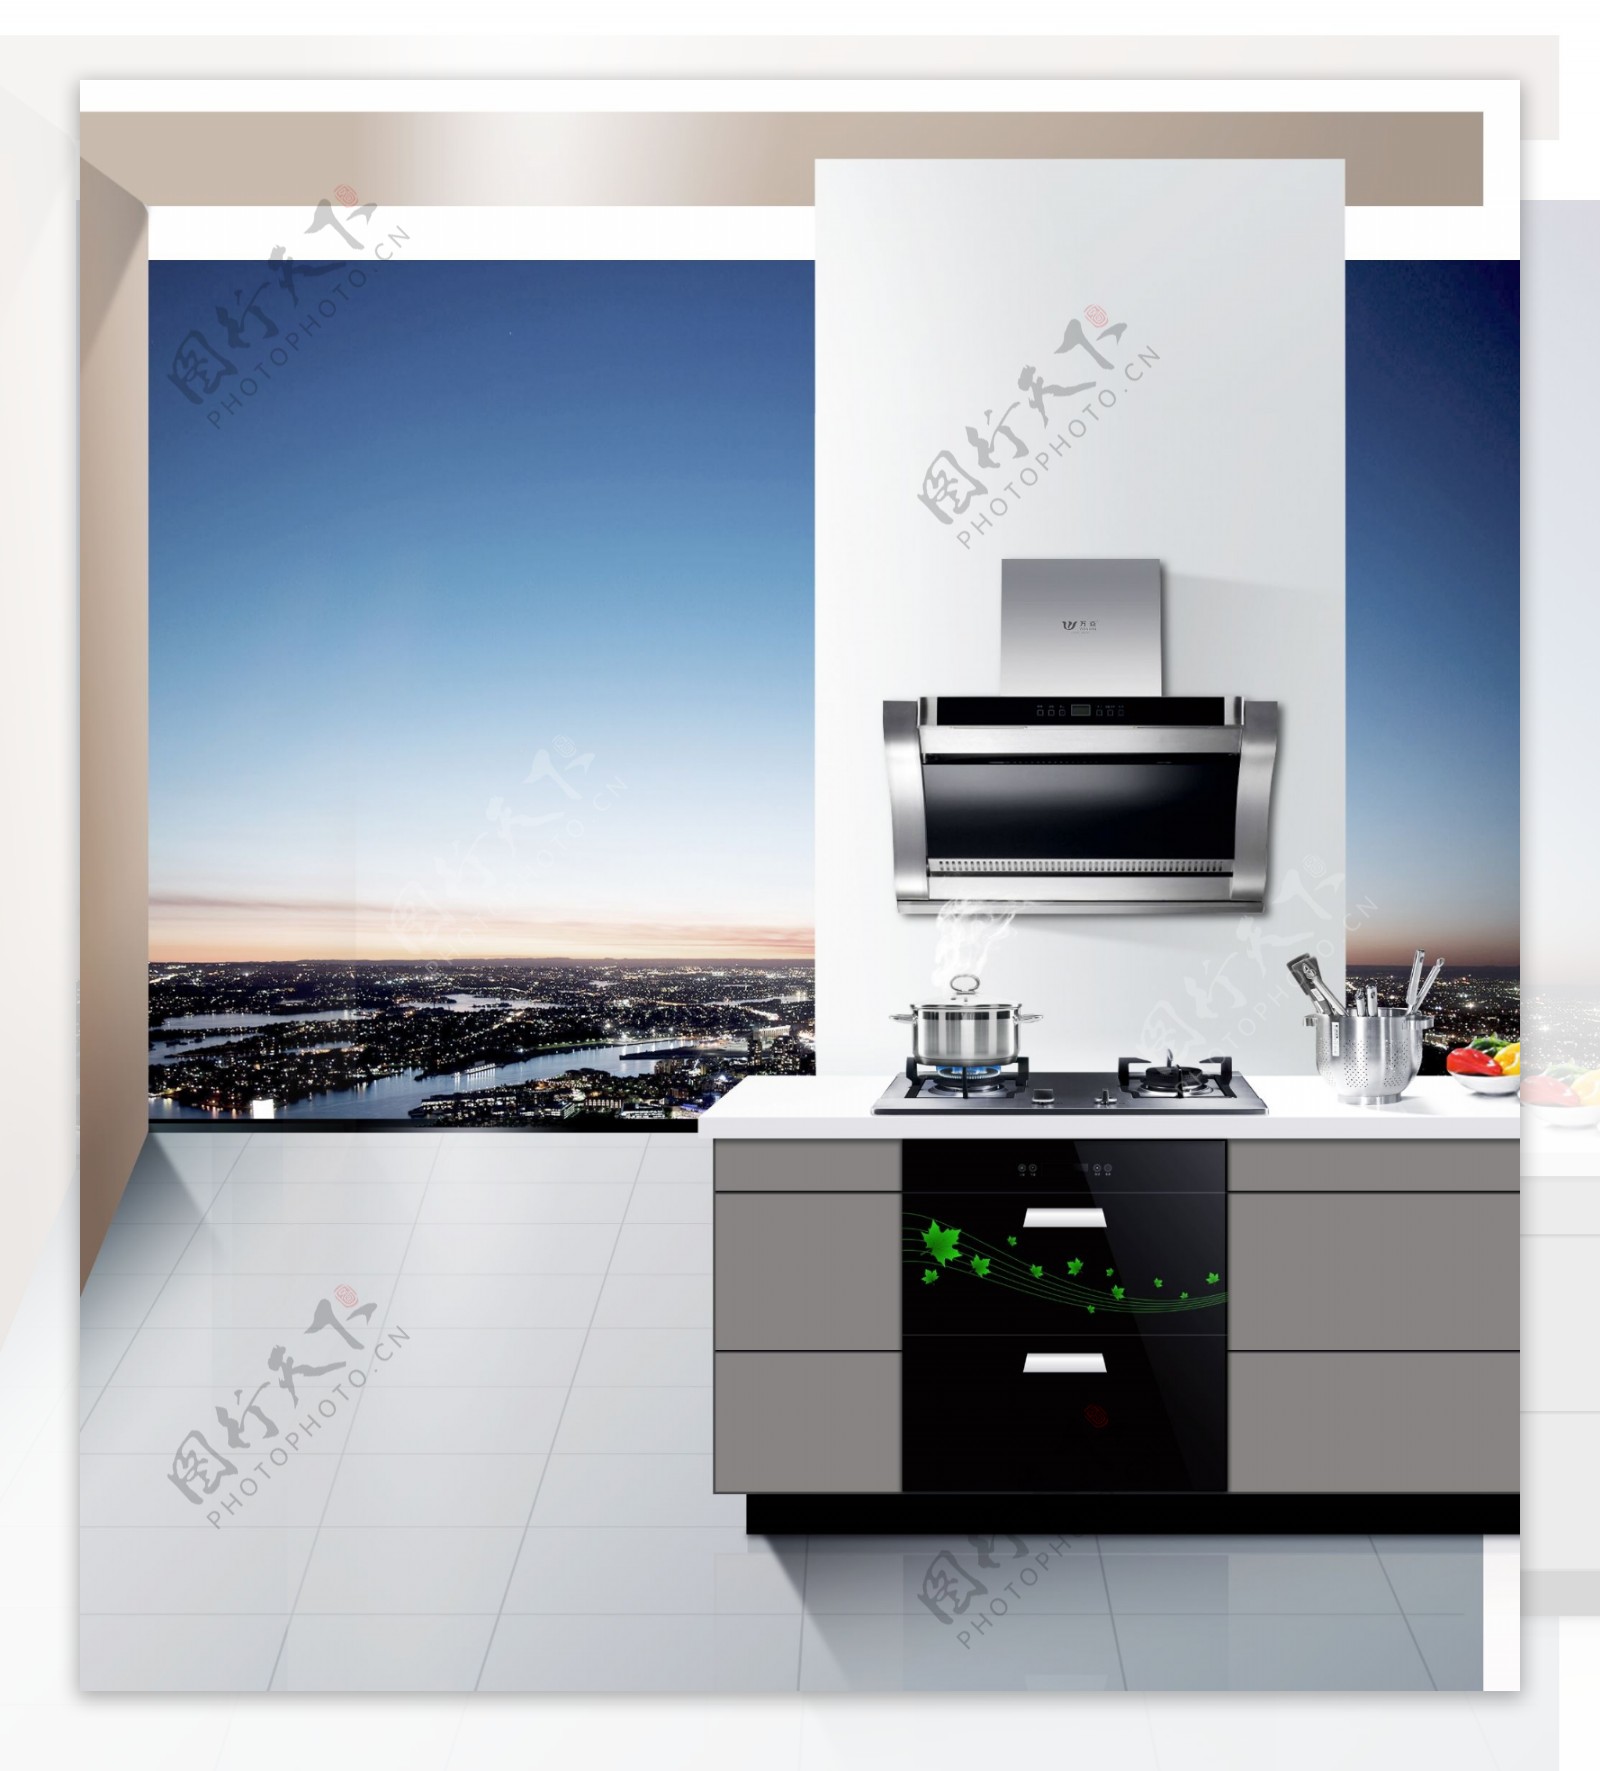 厨房电器广告图片